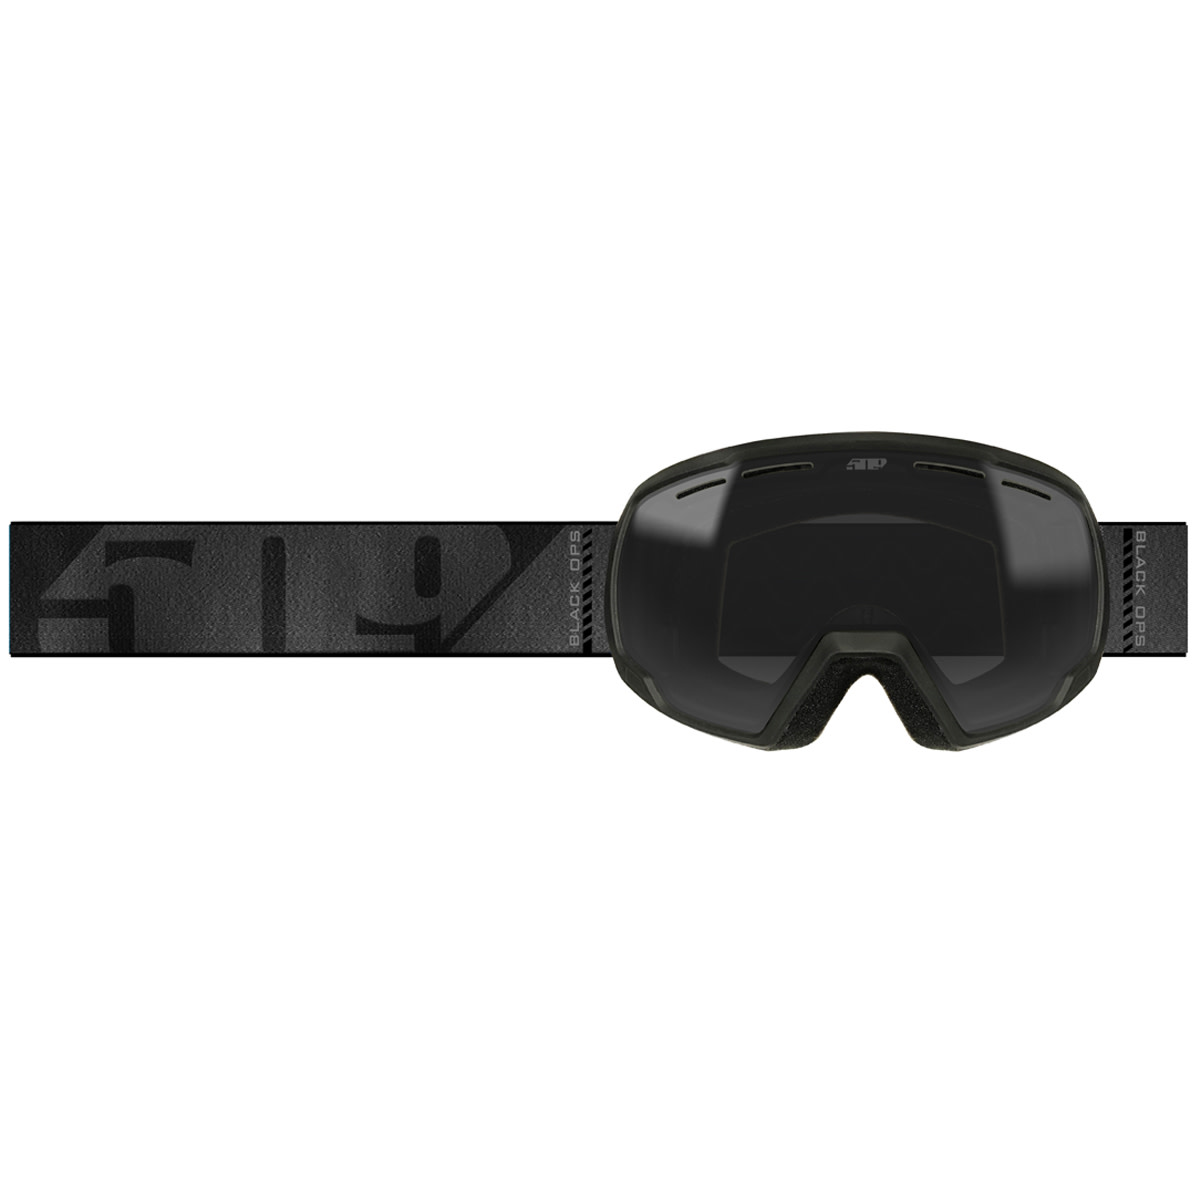 509 goggles  ripper 2.0 goggles - snowmobile